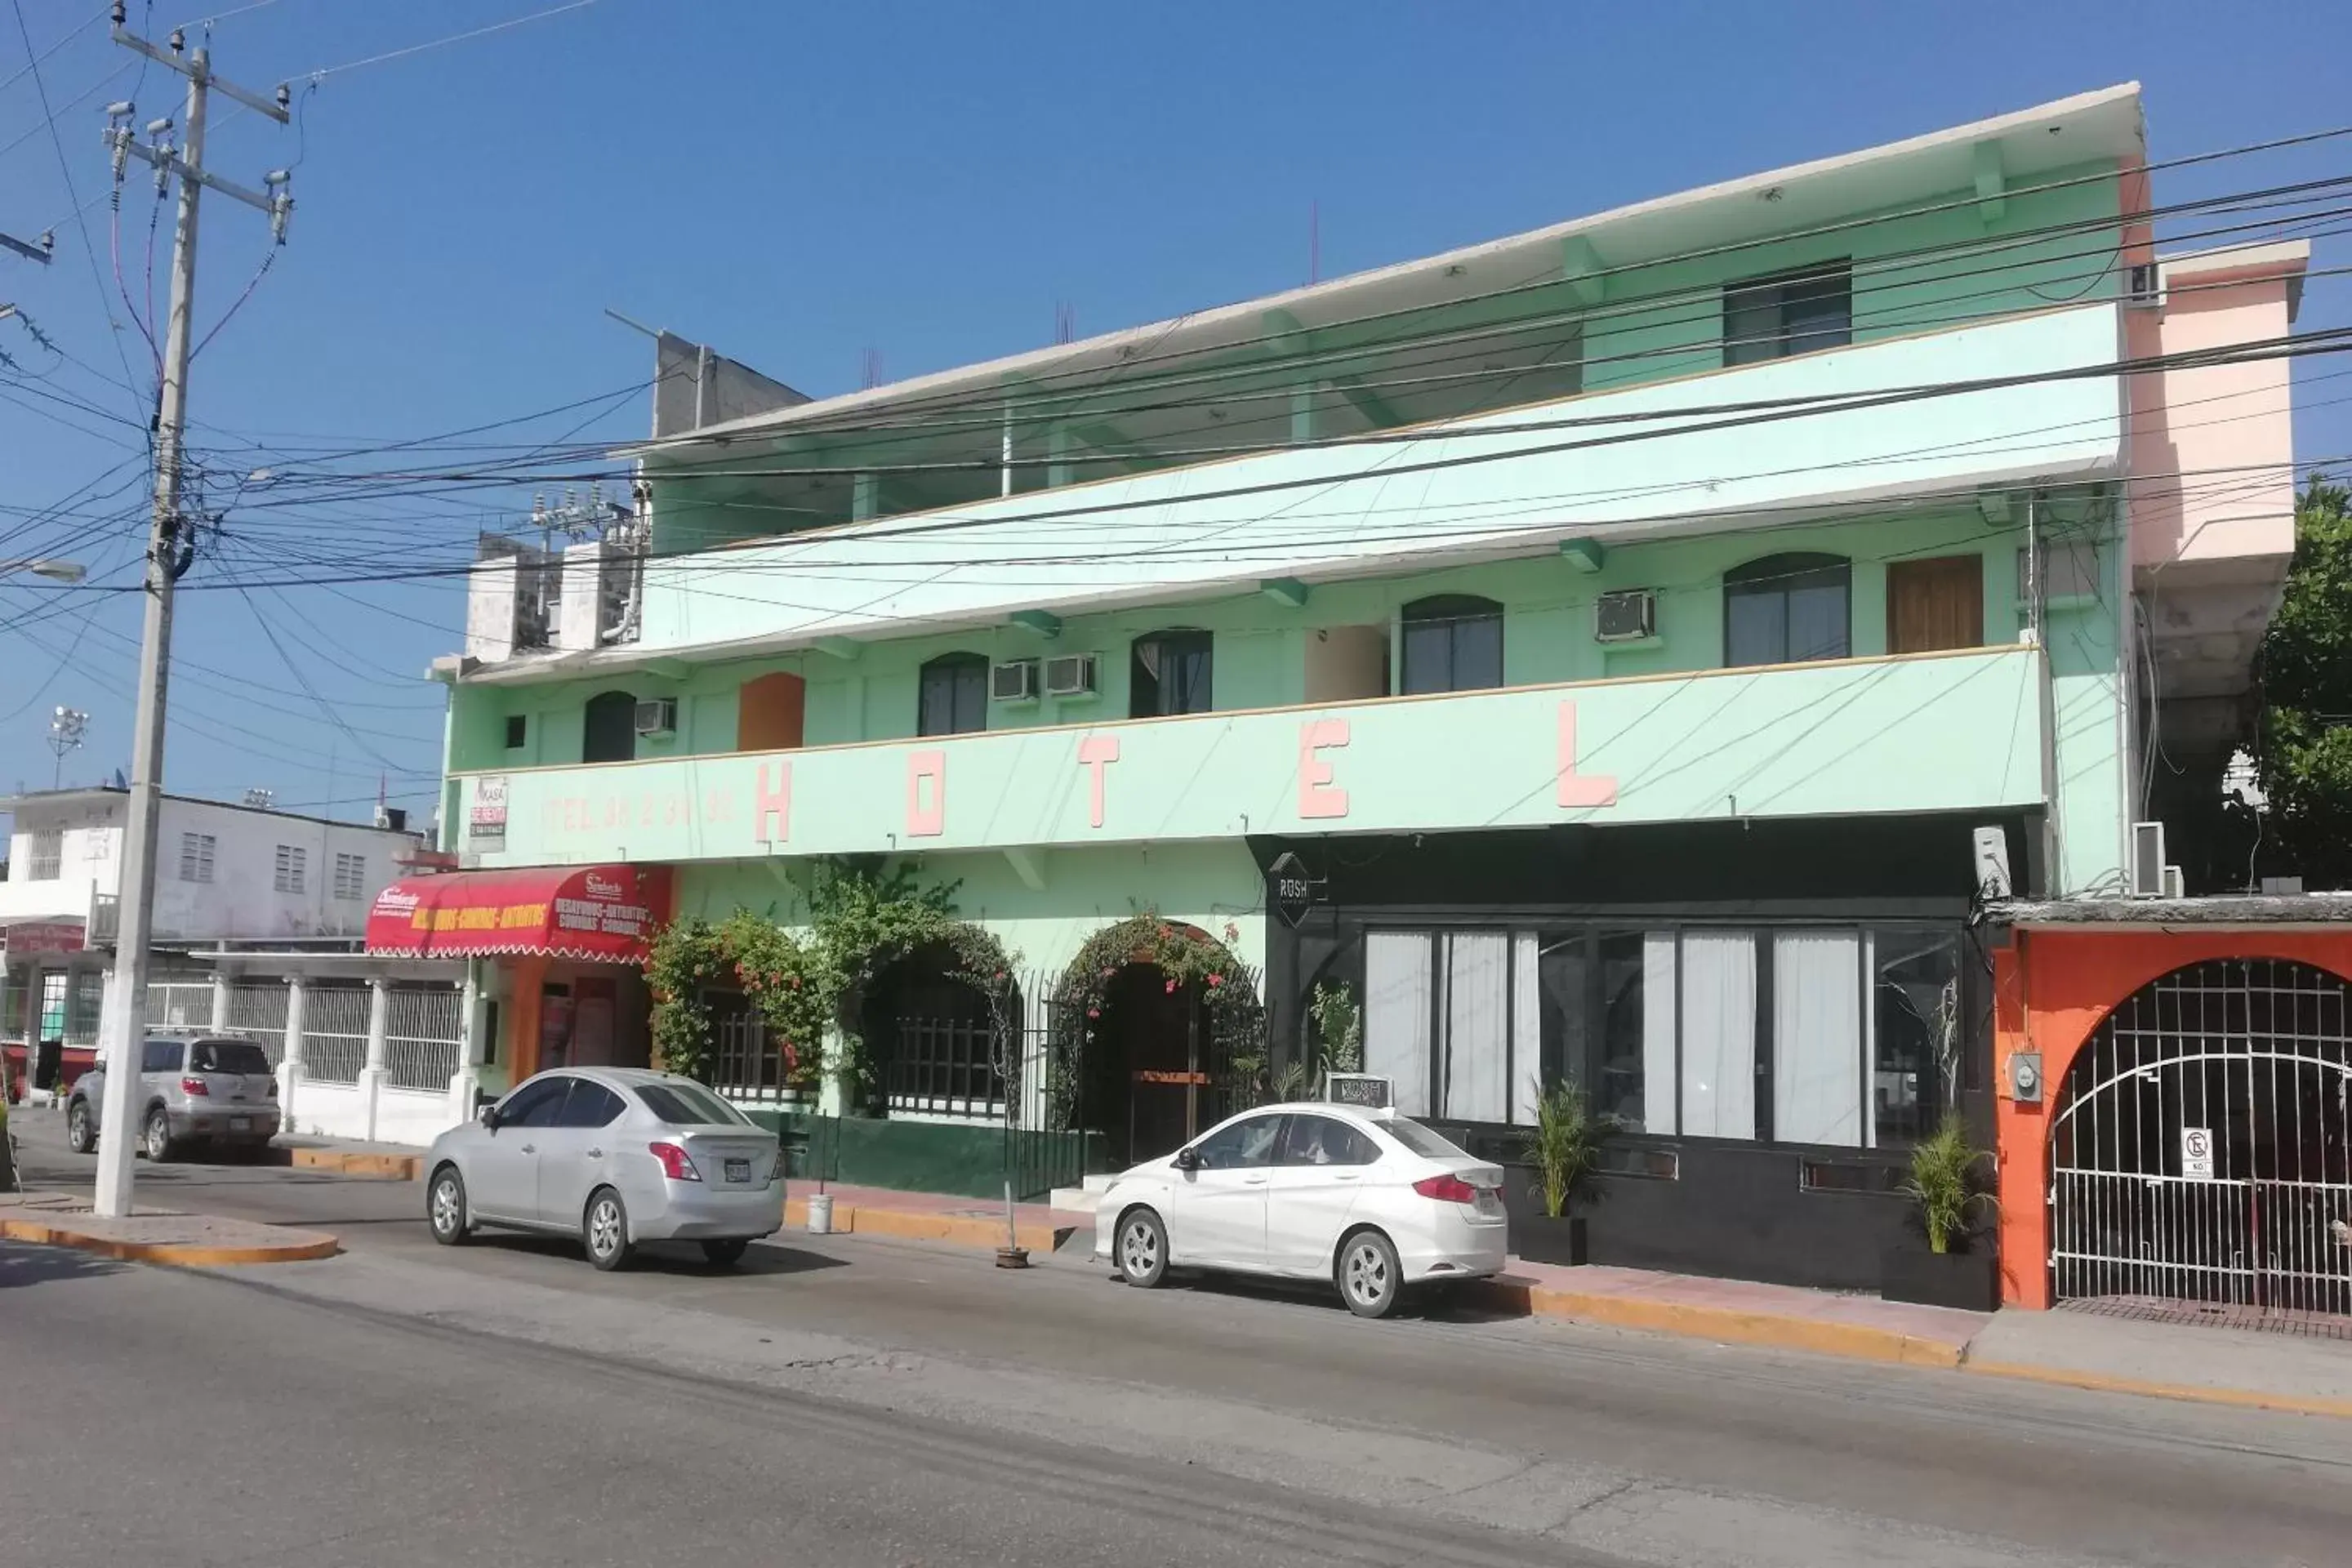 Facade/entrance, Property Building in Hotel Costa Maria